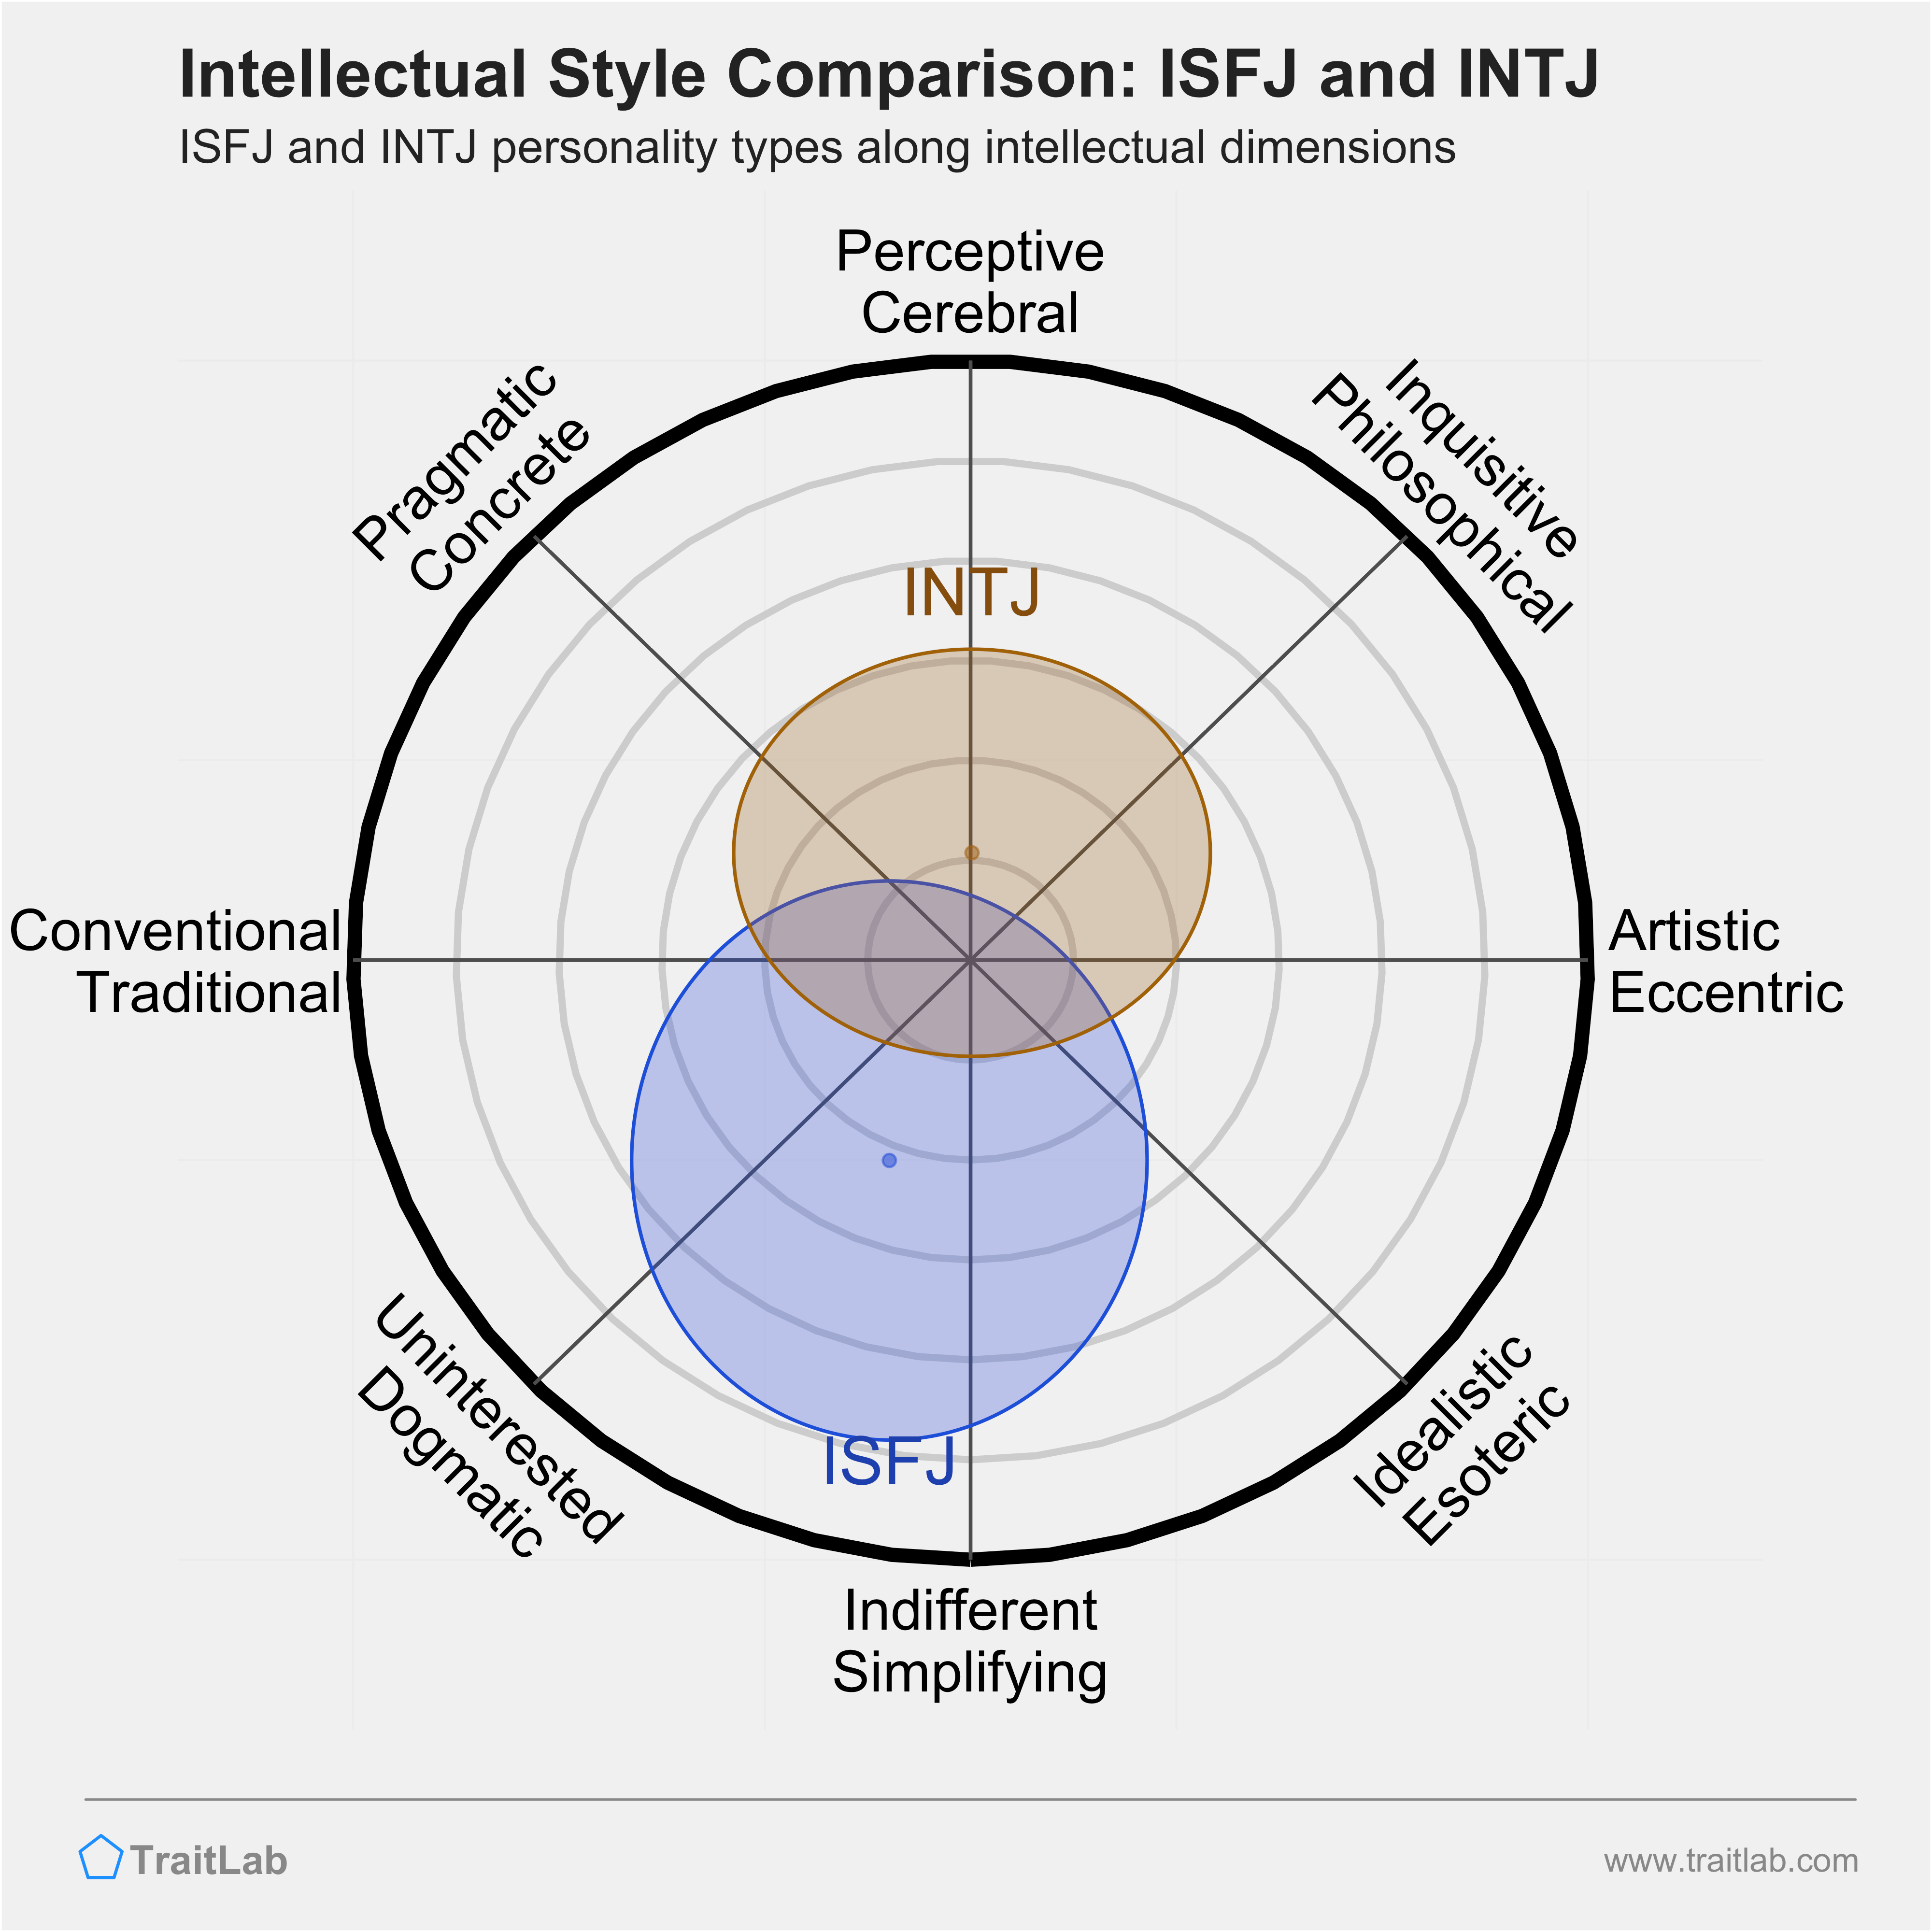 ISFJ and INTJ comparison across intellectual dimensions